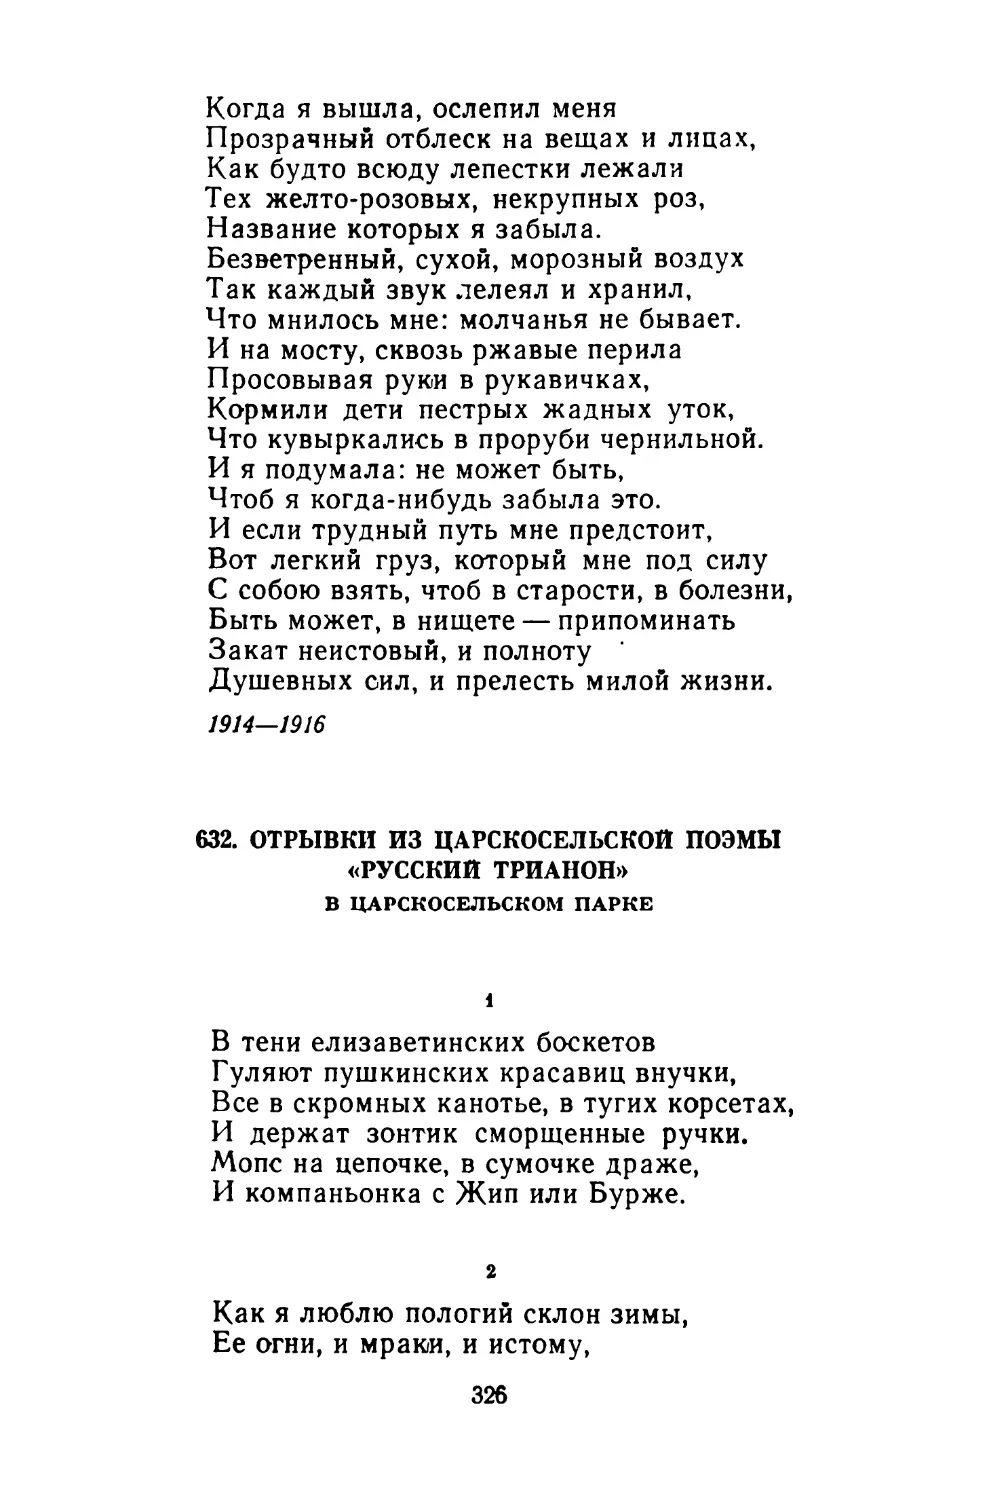 632. Отрывки из царскосельской поэмы «Русский Трианон». В Царскосельском парке